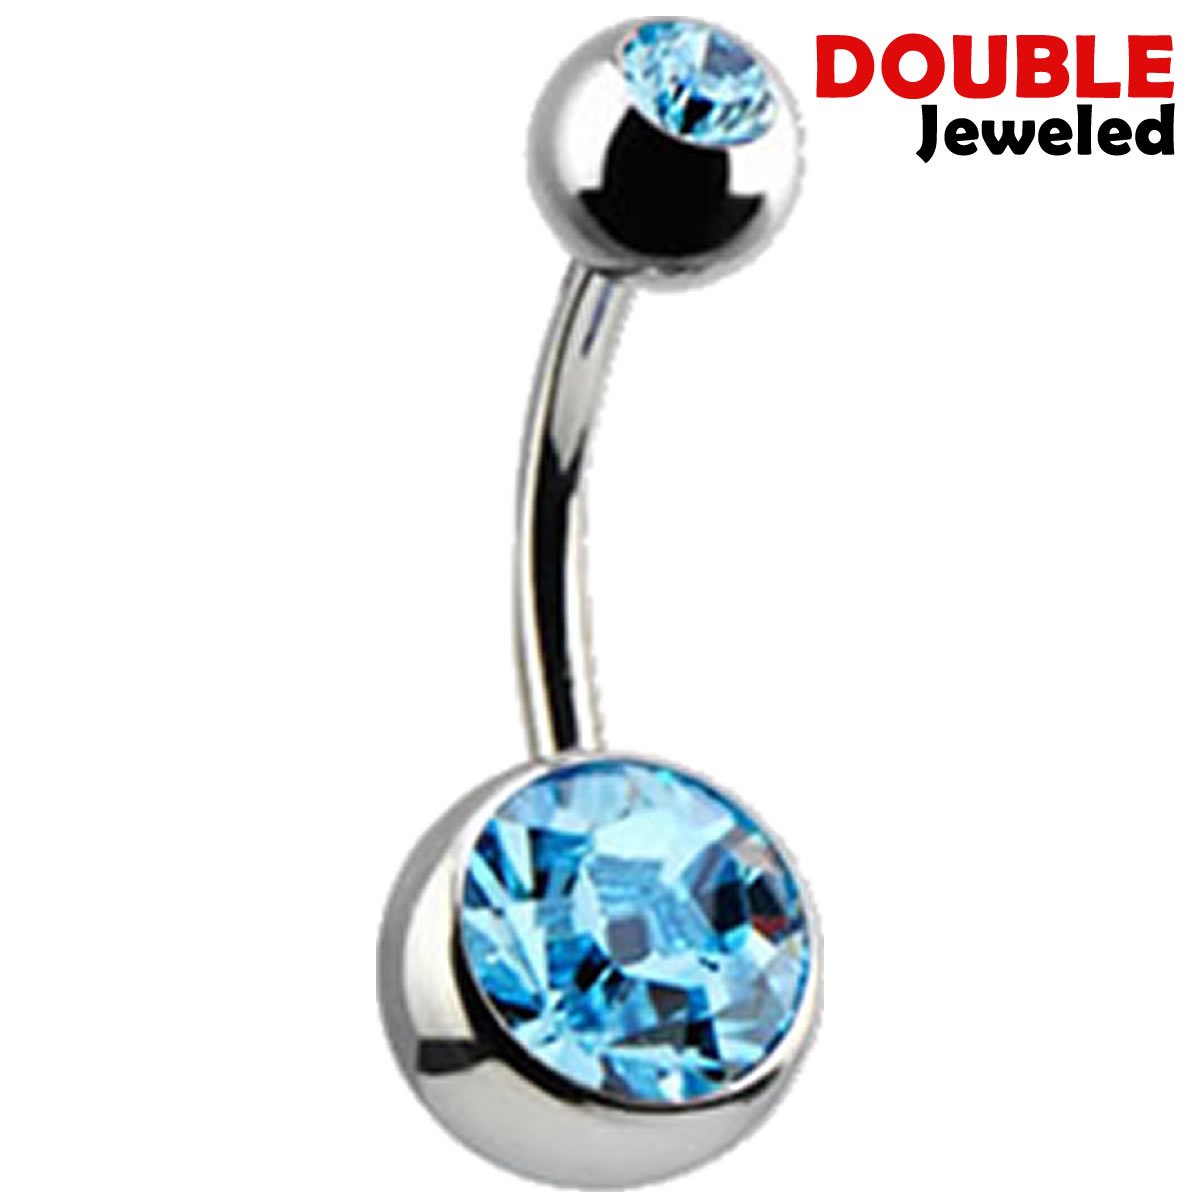 Navelpiercing - Chirurgisch staal - met Aqua zirkonia stenen - Double Jeweled - Licht Blauw